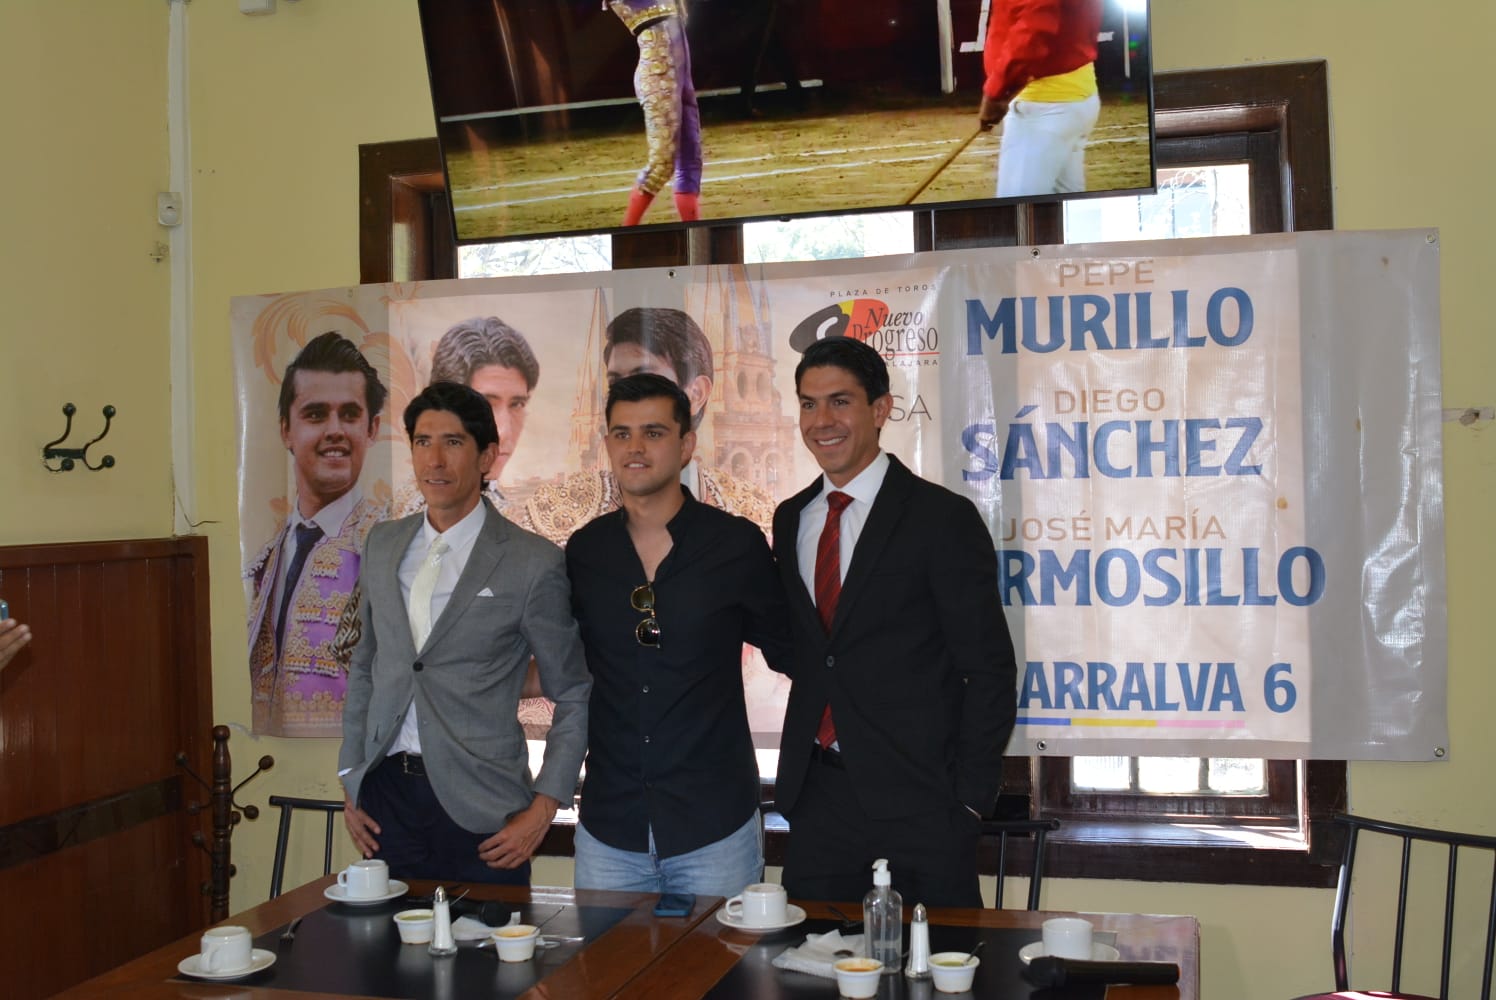 Pepe Murillo, Diego Sánchez y José María Hermosillo convivieron con los medios de comunicación y aficionados de Guadalajara.